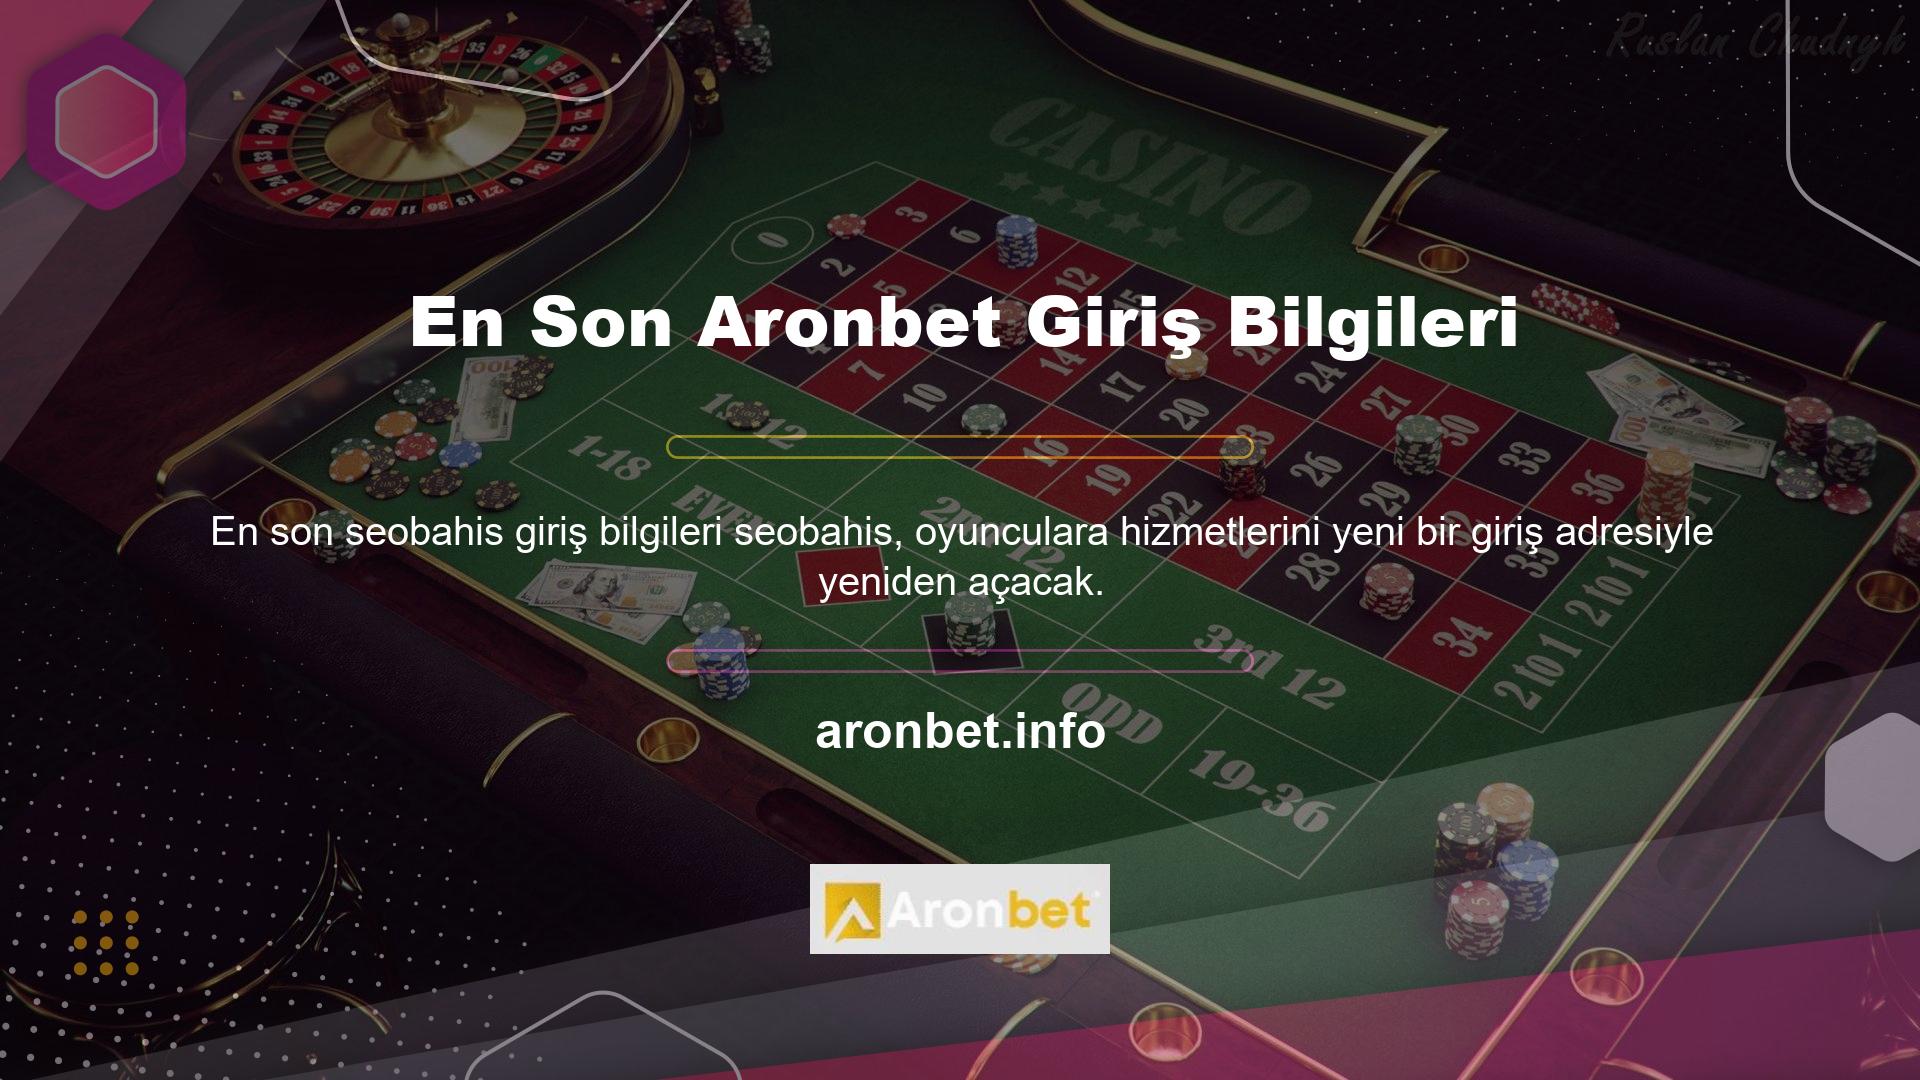 Aronbet şu anda Türkiye'nin en büyük bahis şirketlerinden biridir